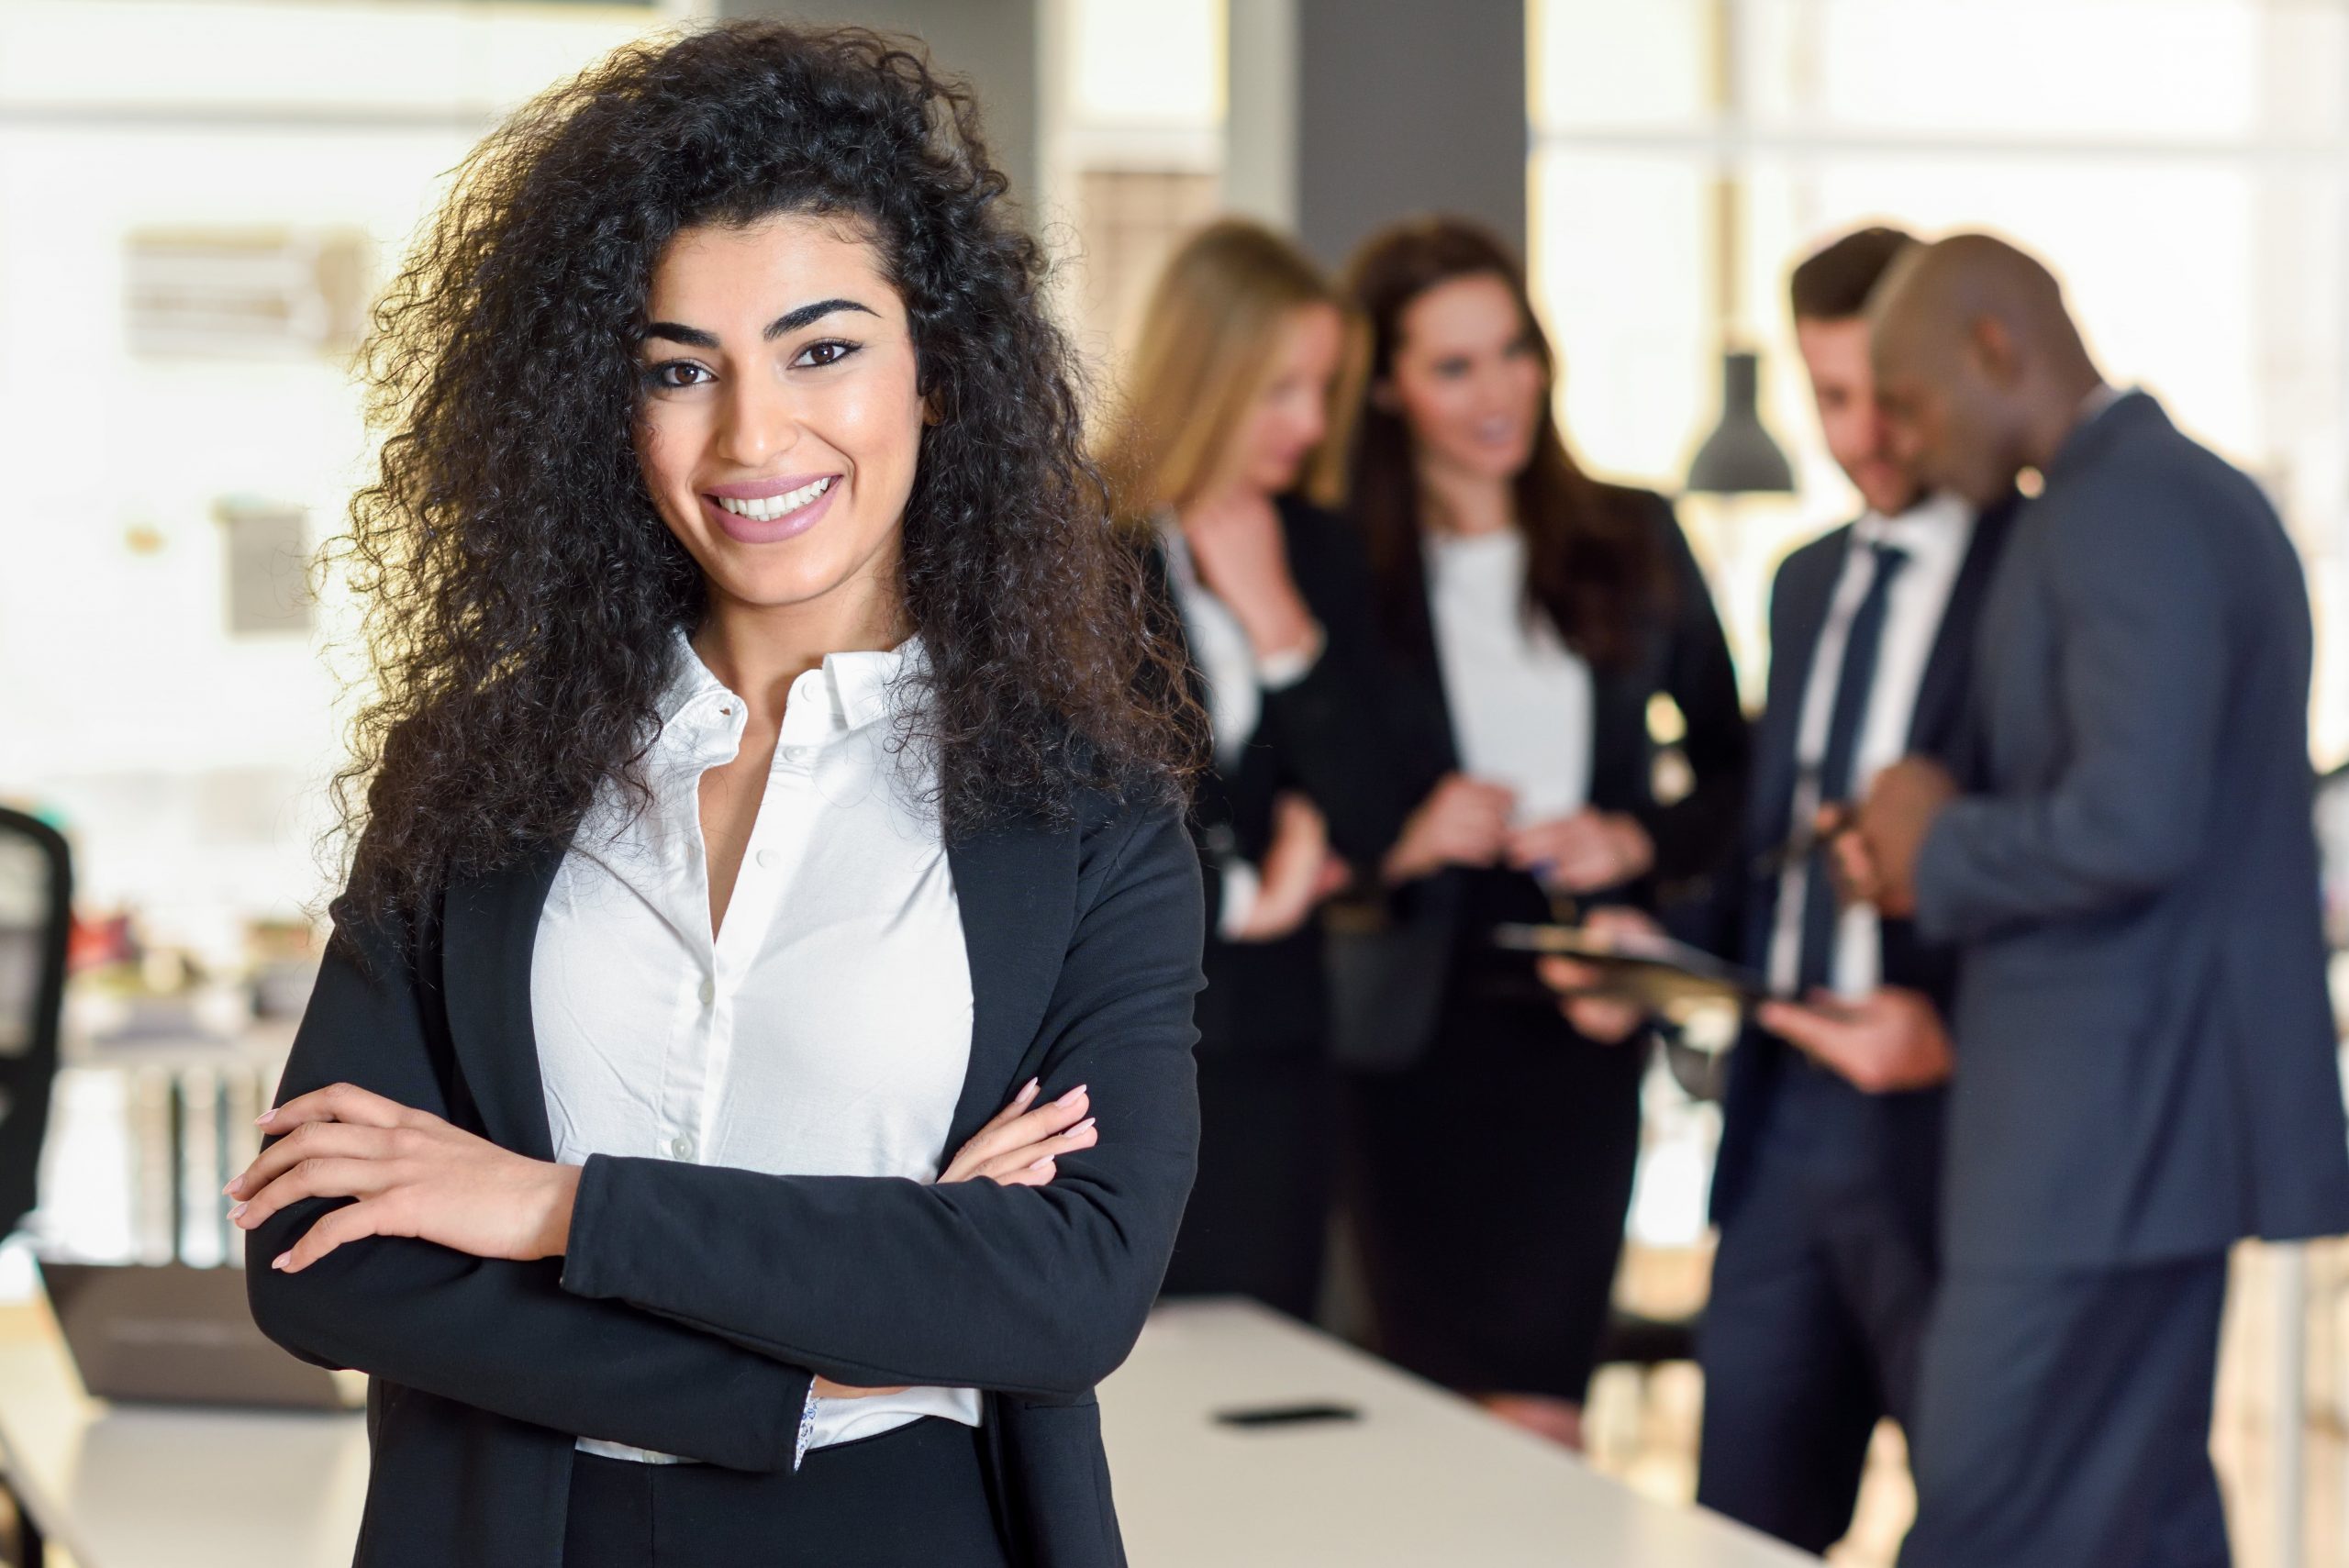 Mujeres líderes aumentan la productividad del trabajador en las empresas